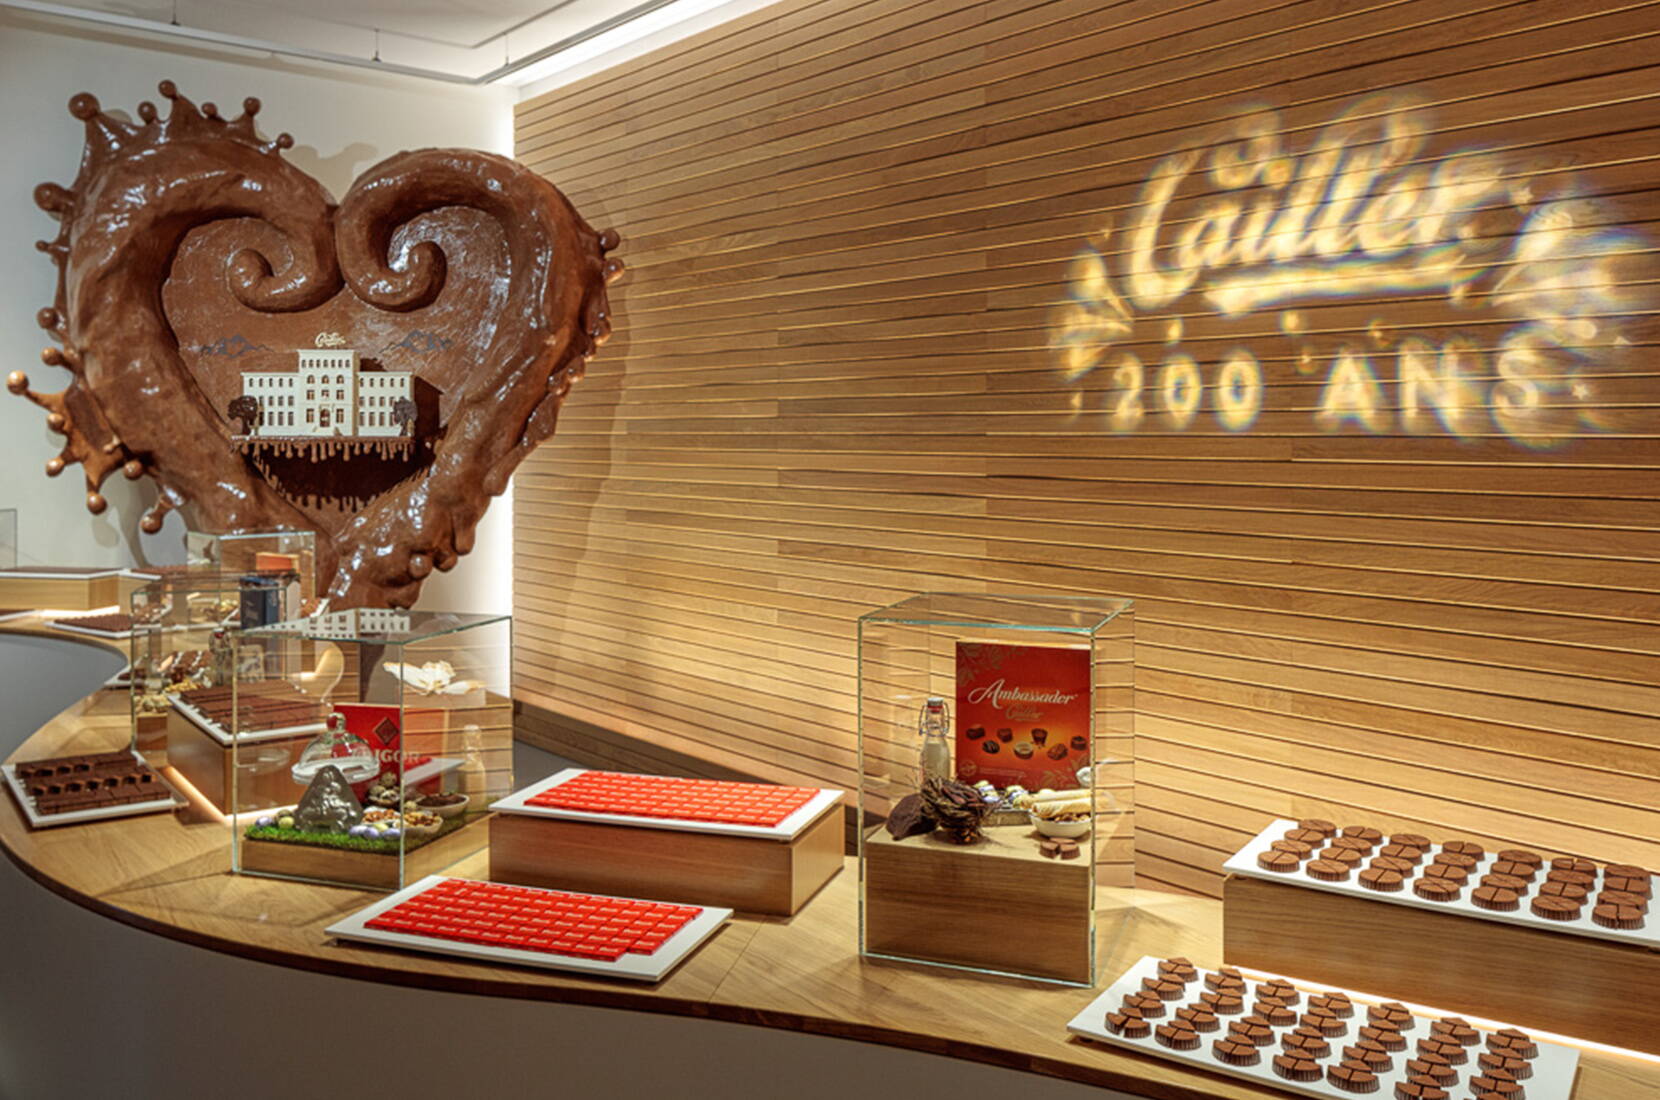 Träumst du davon, eine echte Schokoladenfabrik zu besichtigen? Besuche das Maison Cailler in Broc und entdecke die Welt von Cailler. Erfahre alles über die Schokolade dank einer interaktiven und multisensorischen Erfahrung, lerne die Chocolatiers kennen oder stelle deine eigene Schokolade im Rahmen eines Schokolade-Workshops her.